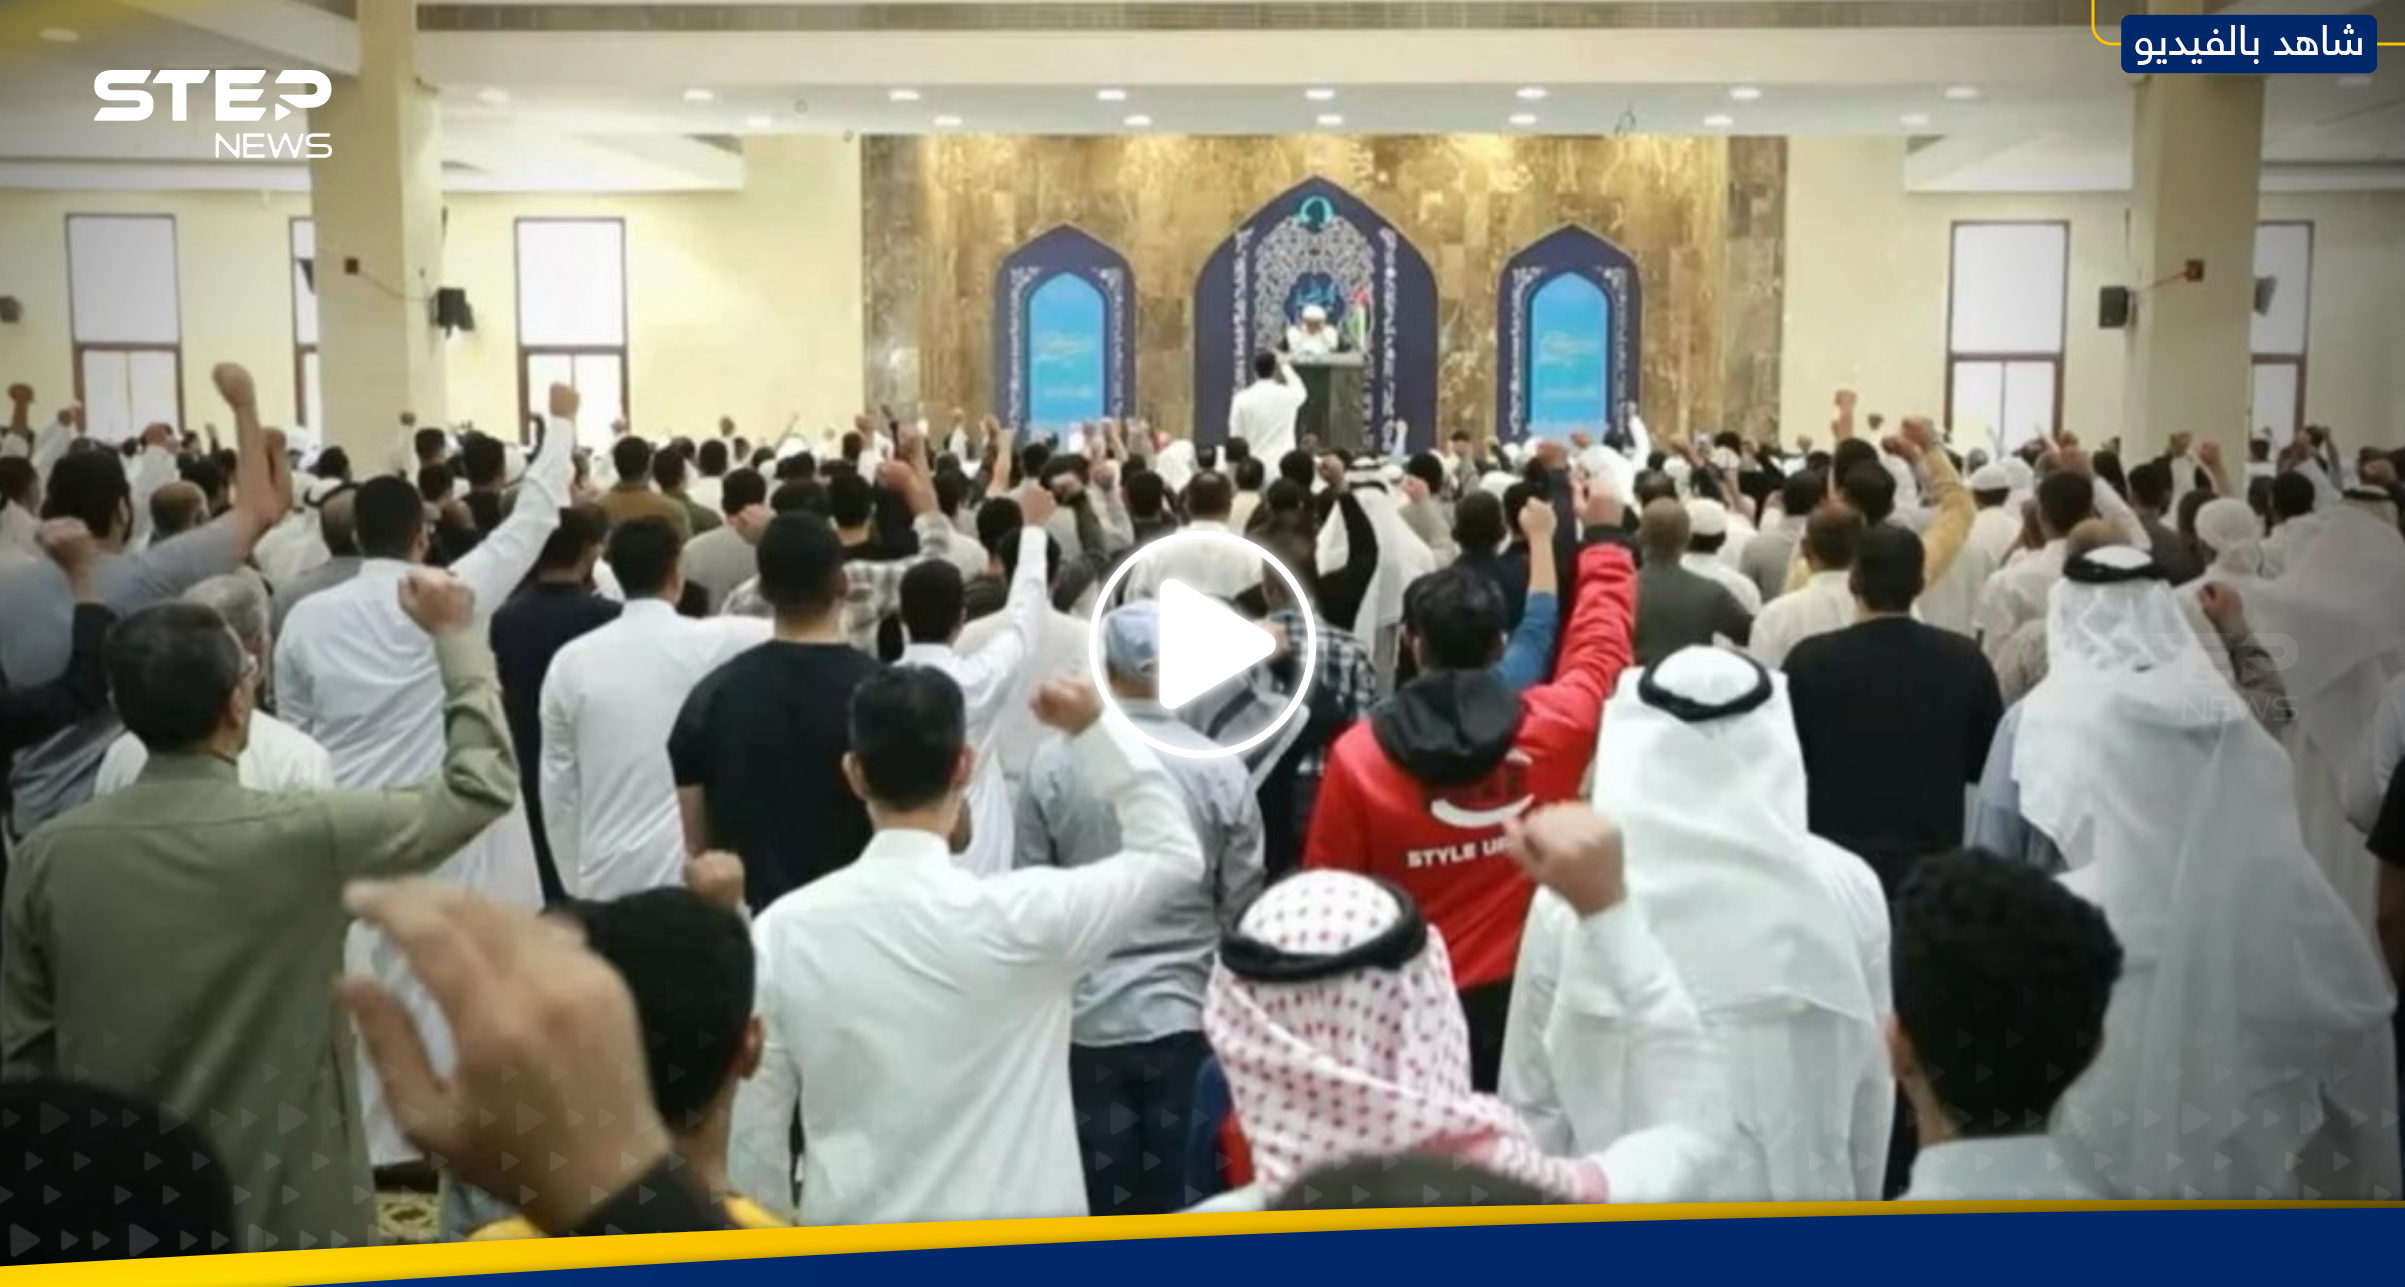 بالفيديو|| جدل على التواصل الاجتماعي بعد هتافات بمسجد في البحرين ضد إسرائيل وأمريكا.. ماذا جرى؟